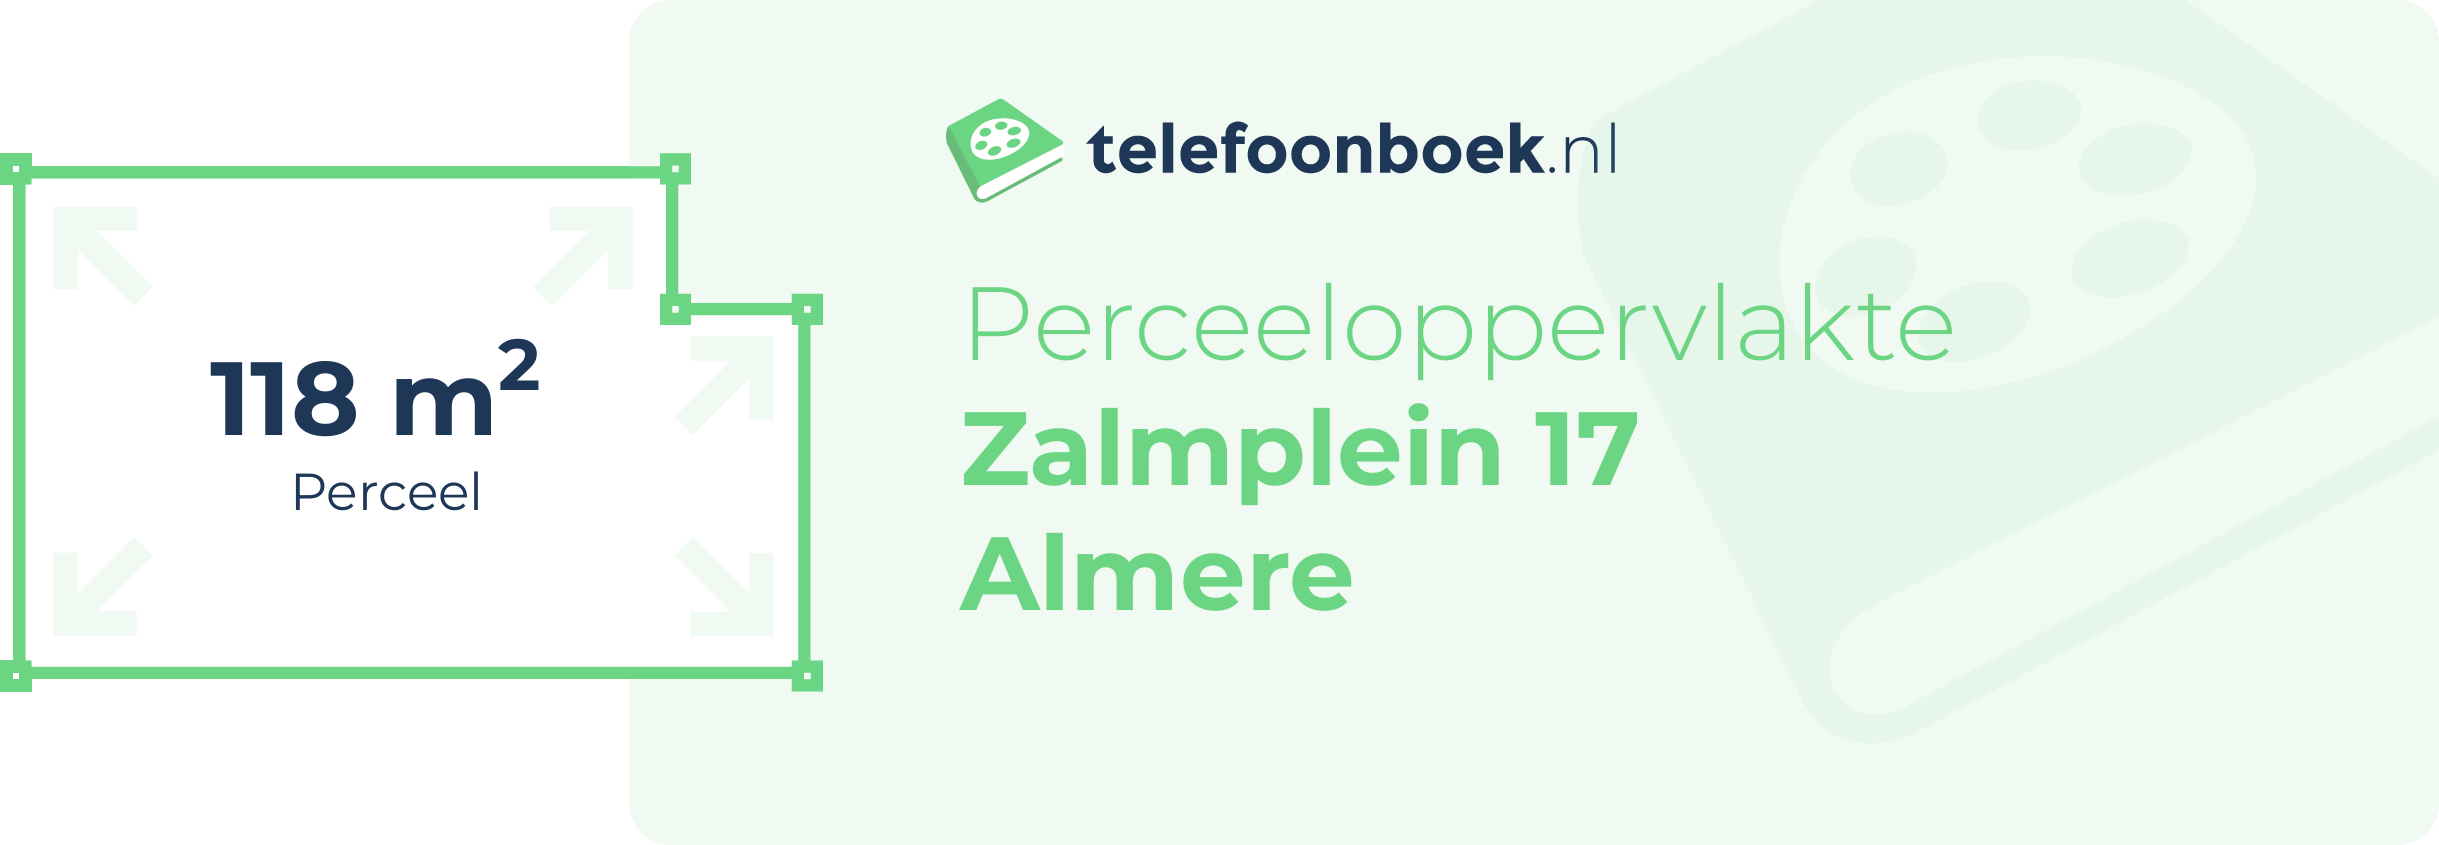 Perceeloppervlakte Zalmplein 17 Almere